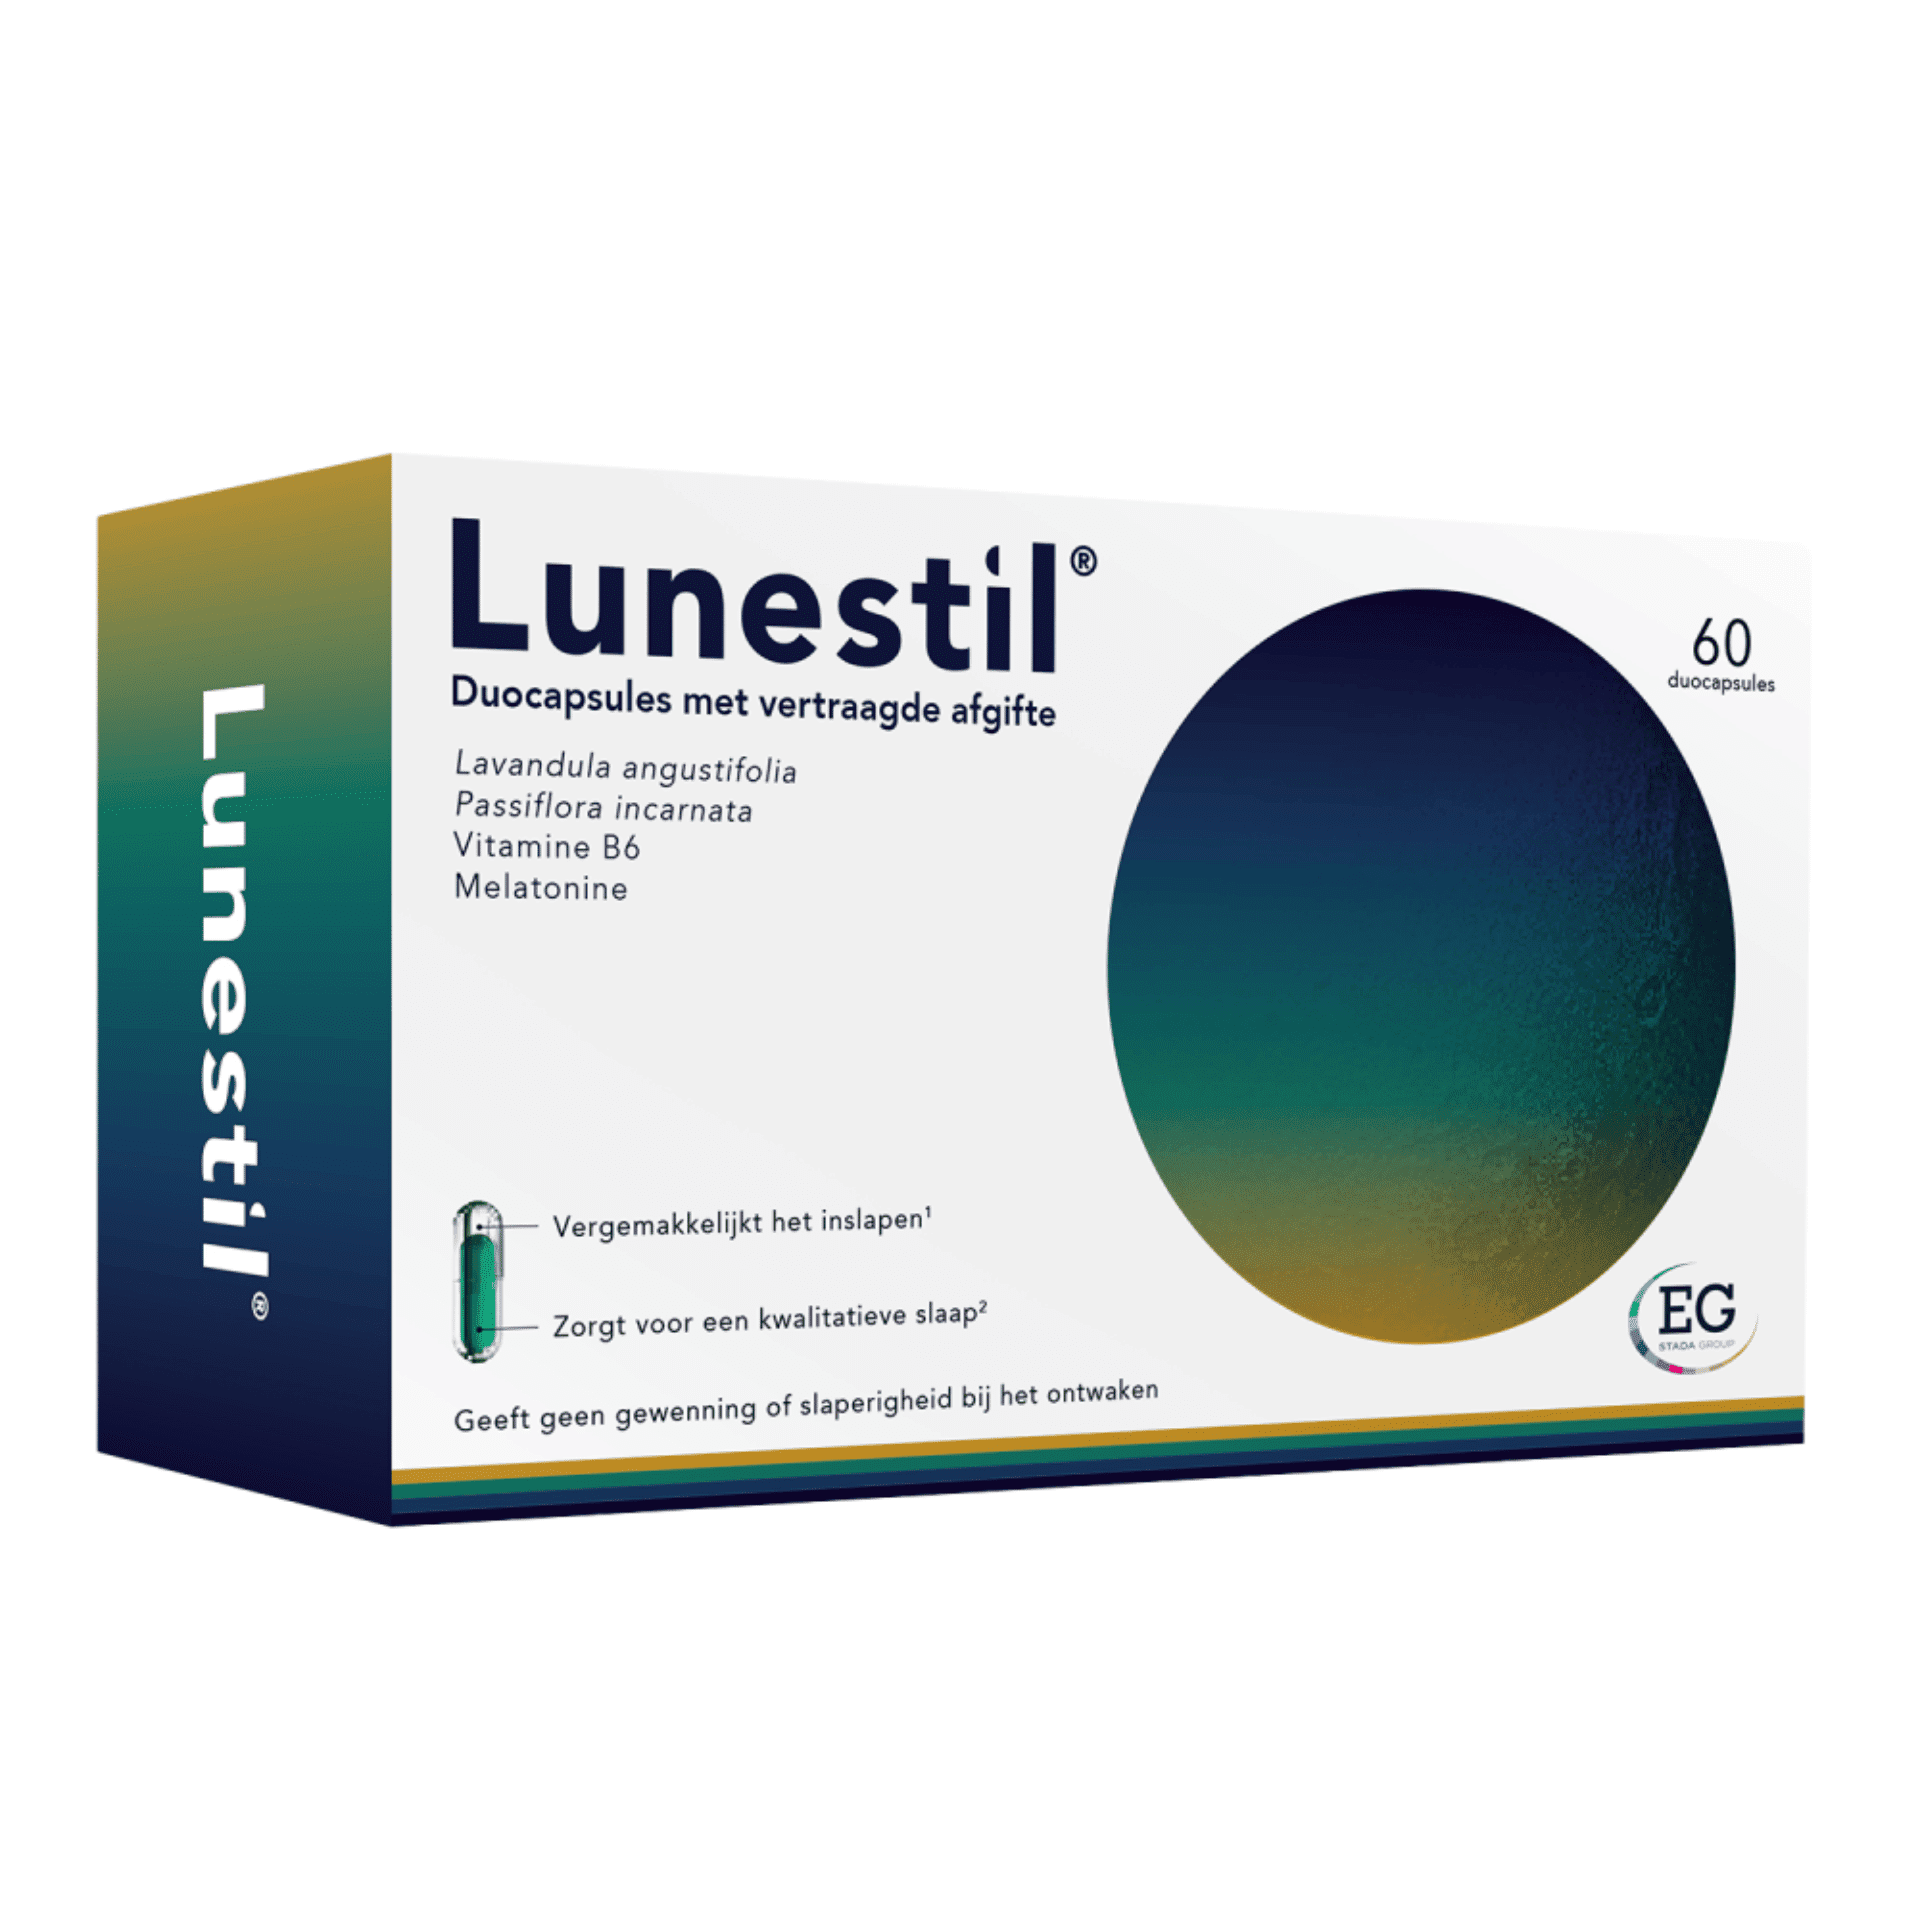 Lunestil